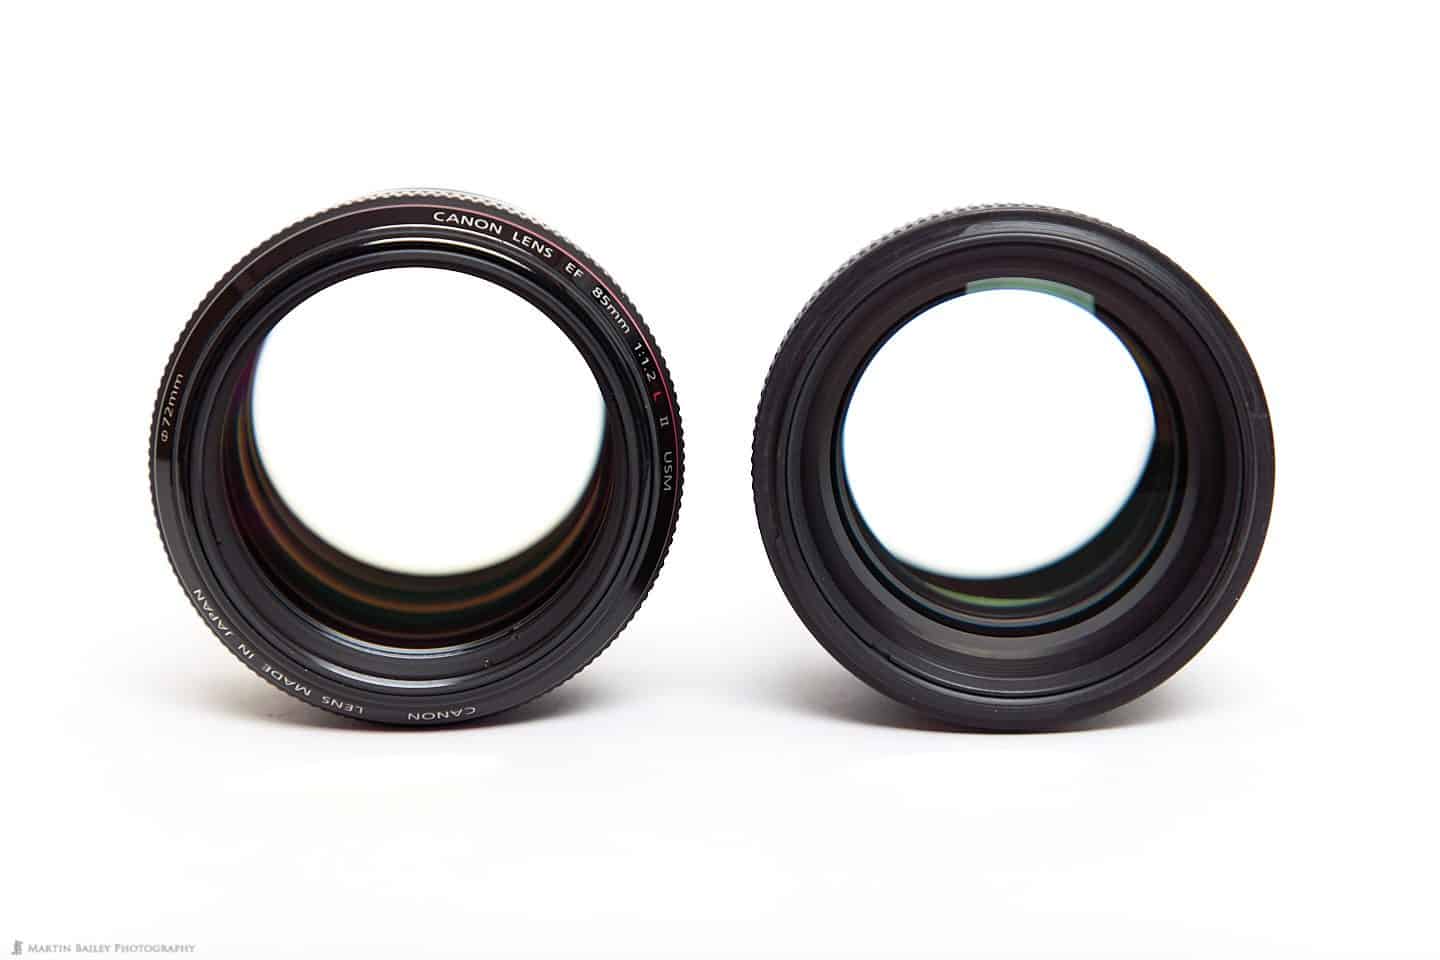 Canon EF 85mm f/1.2L II lens (left) and f/1.4L IS Lens (right)